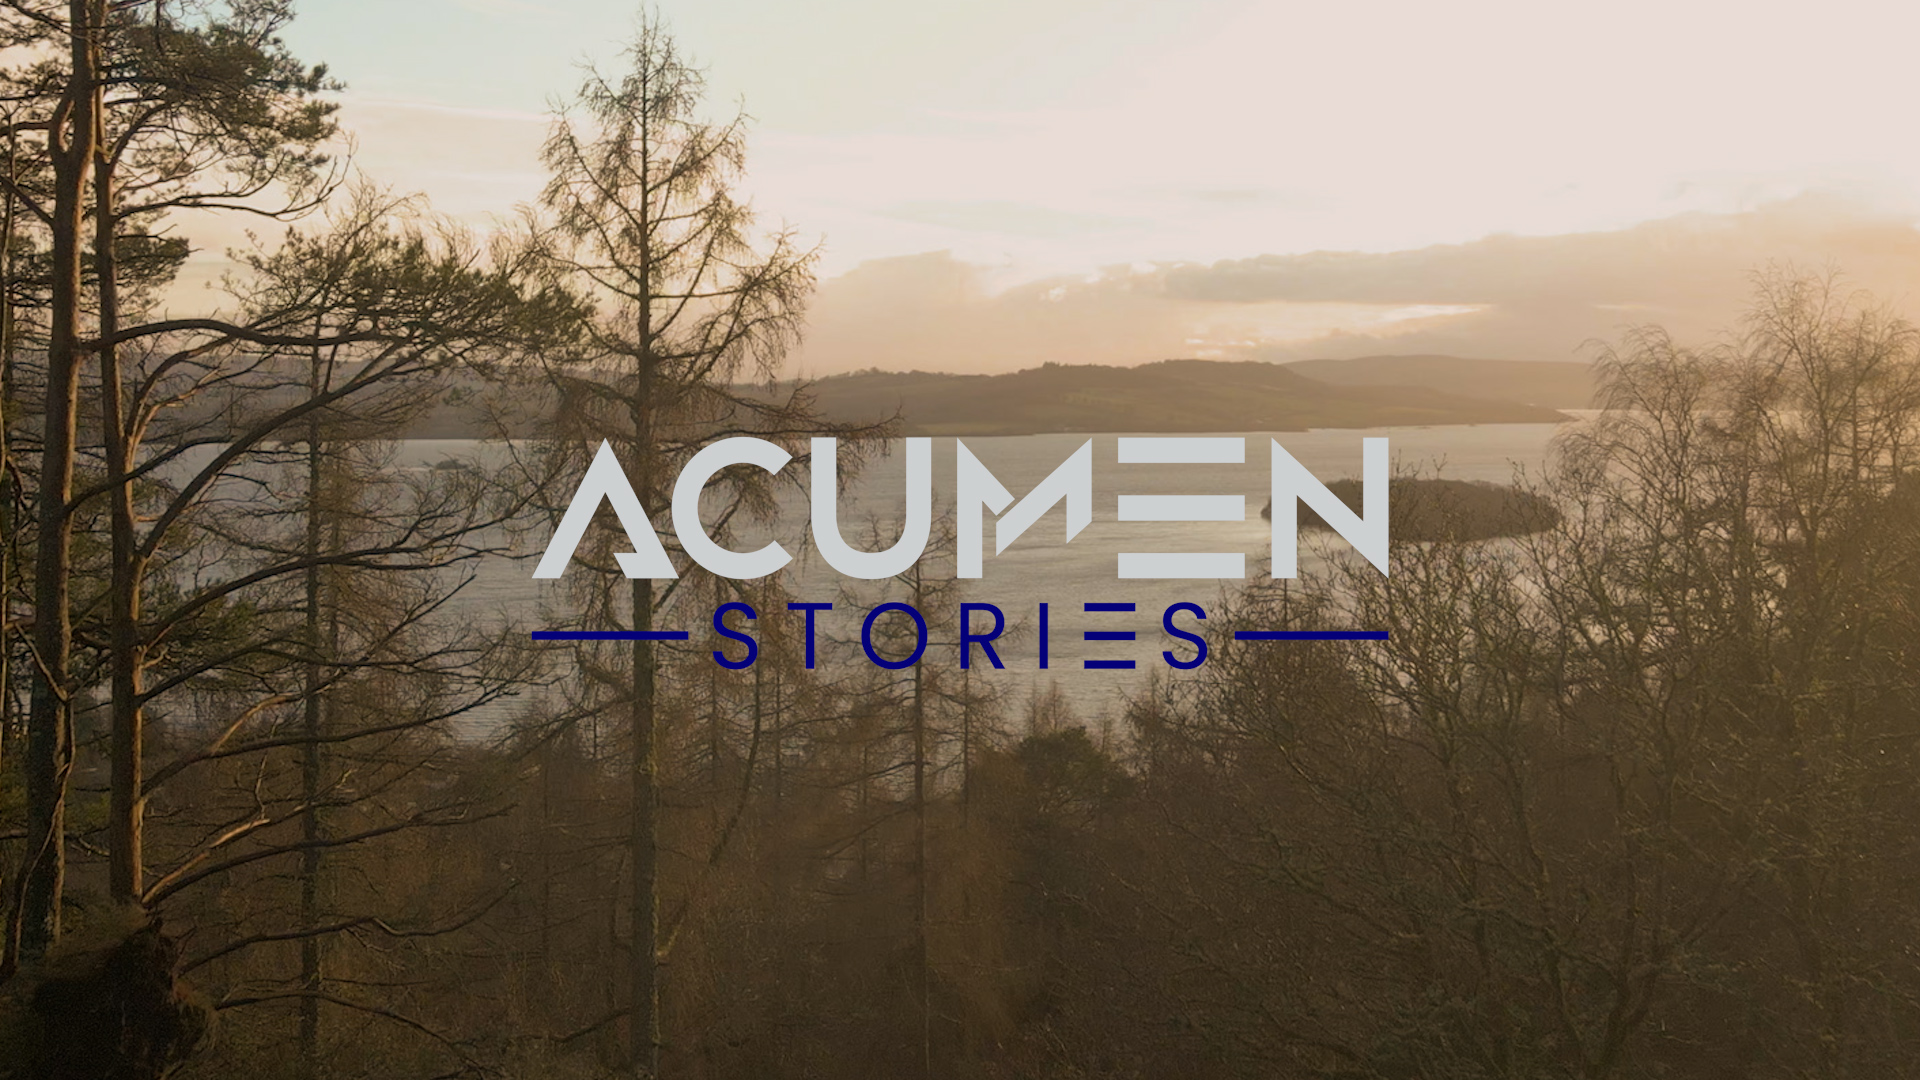 Acumen Media Acumen Stories Acumen International Acumen social media